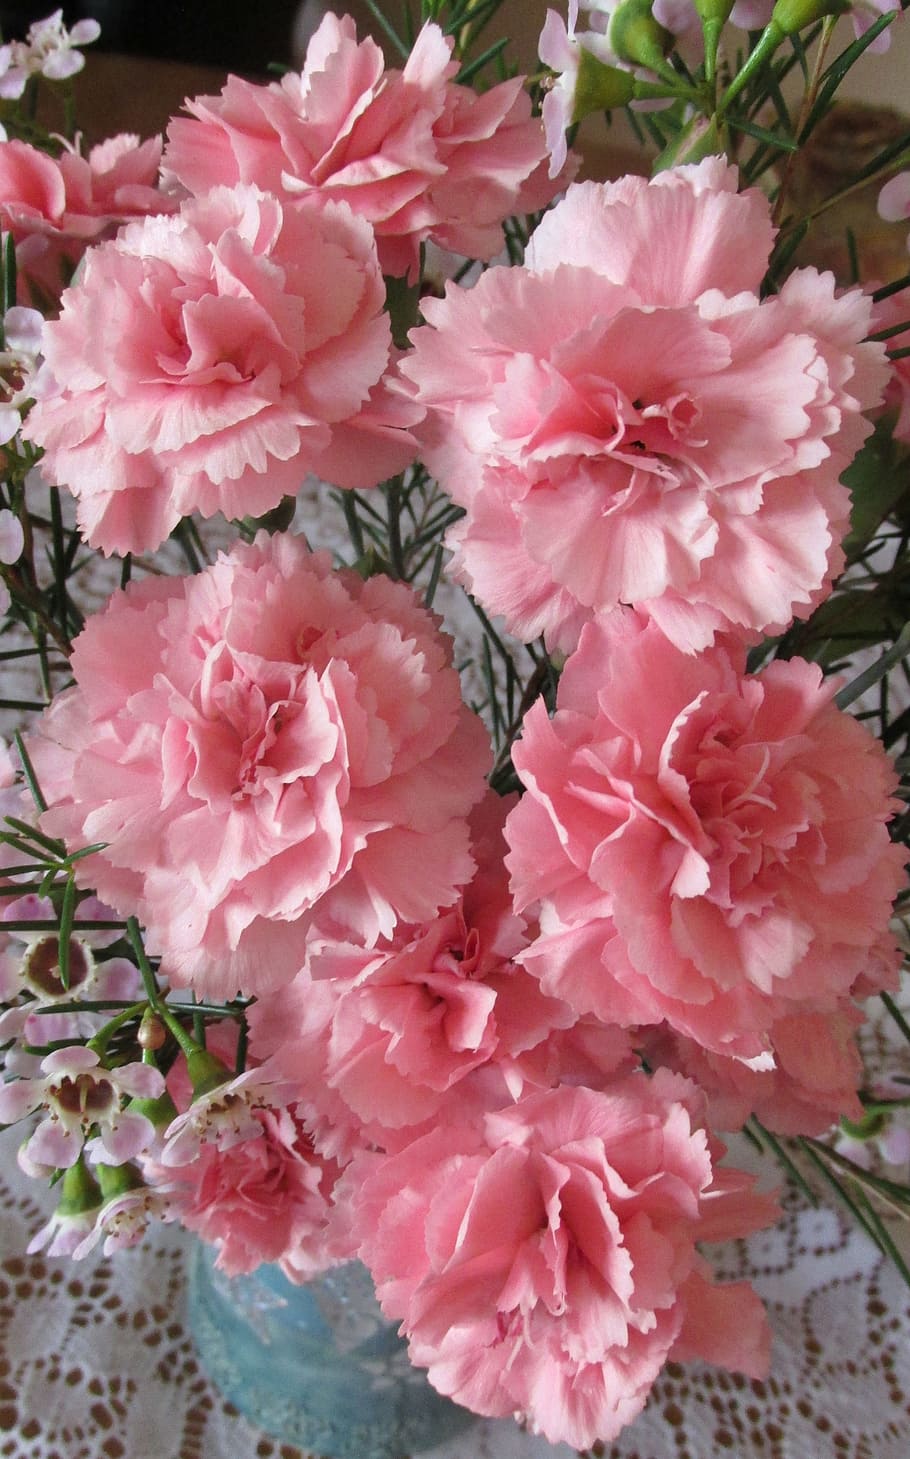 flores rosadas, claveles, rosa, perfume, flores, planta, color rosado, flor, planta floreciendo, belleza en la naturaleza